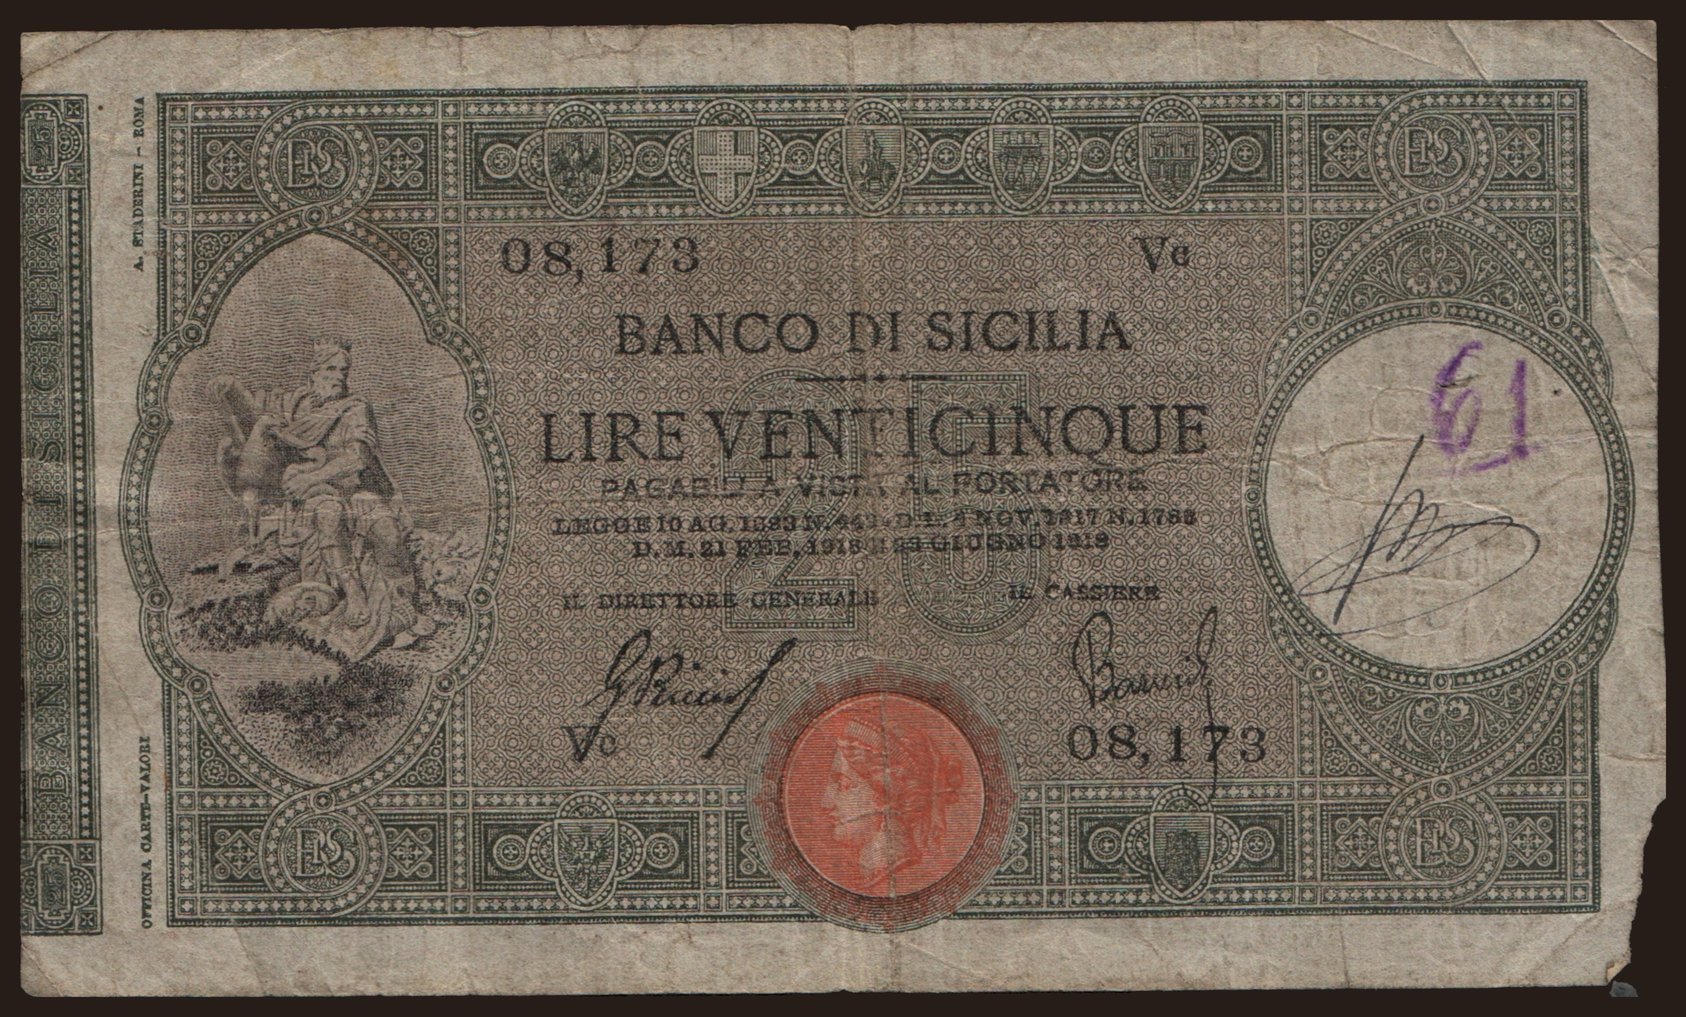 Banco di Sicilia, 25 lire, 1918